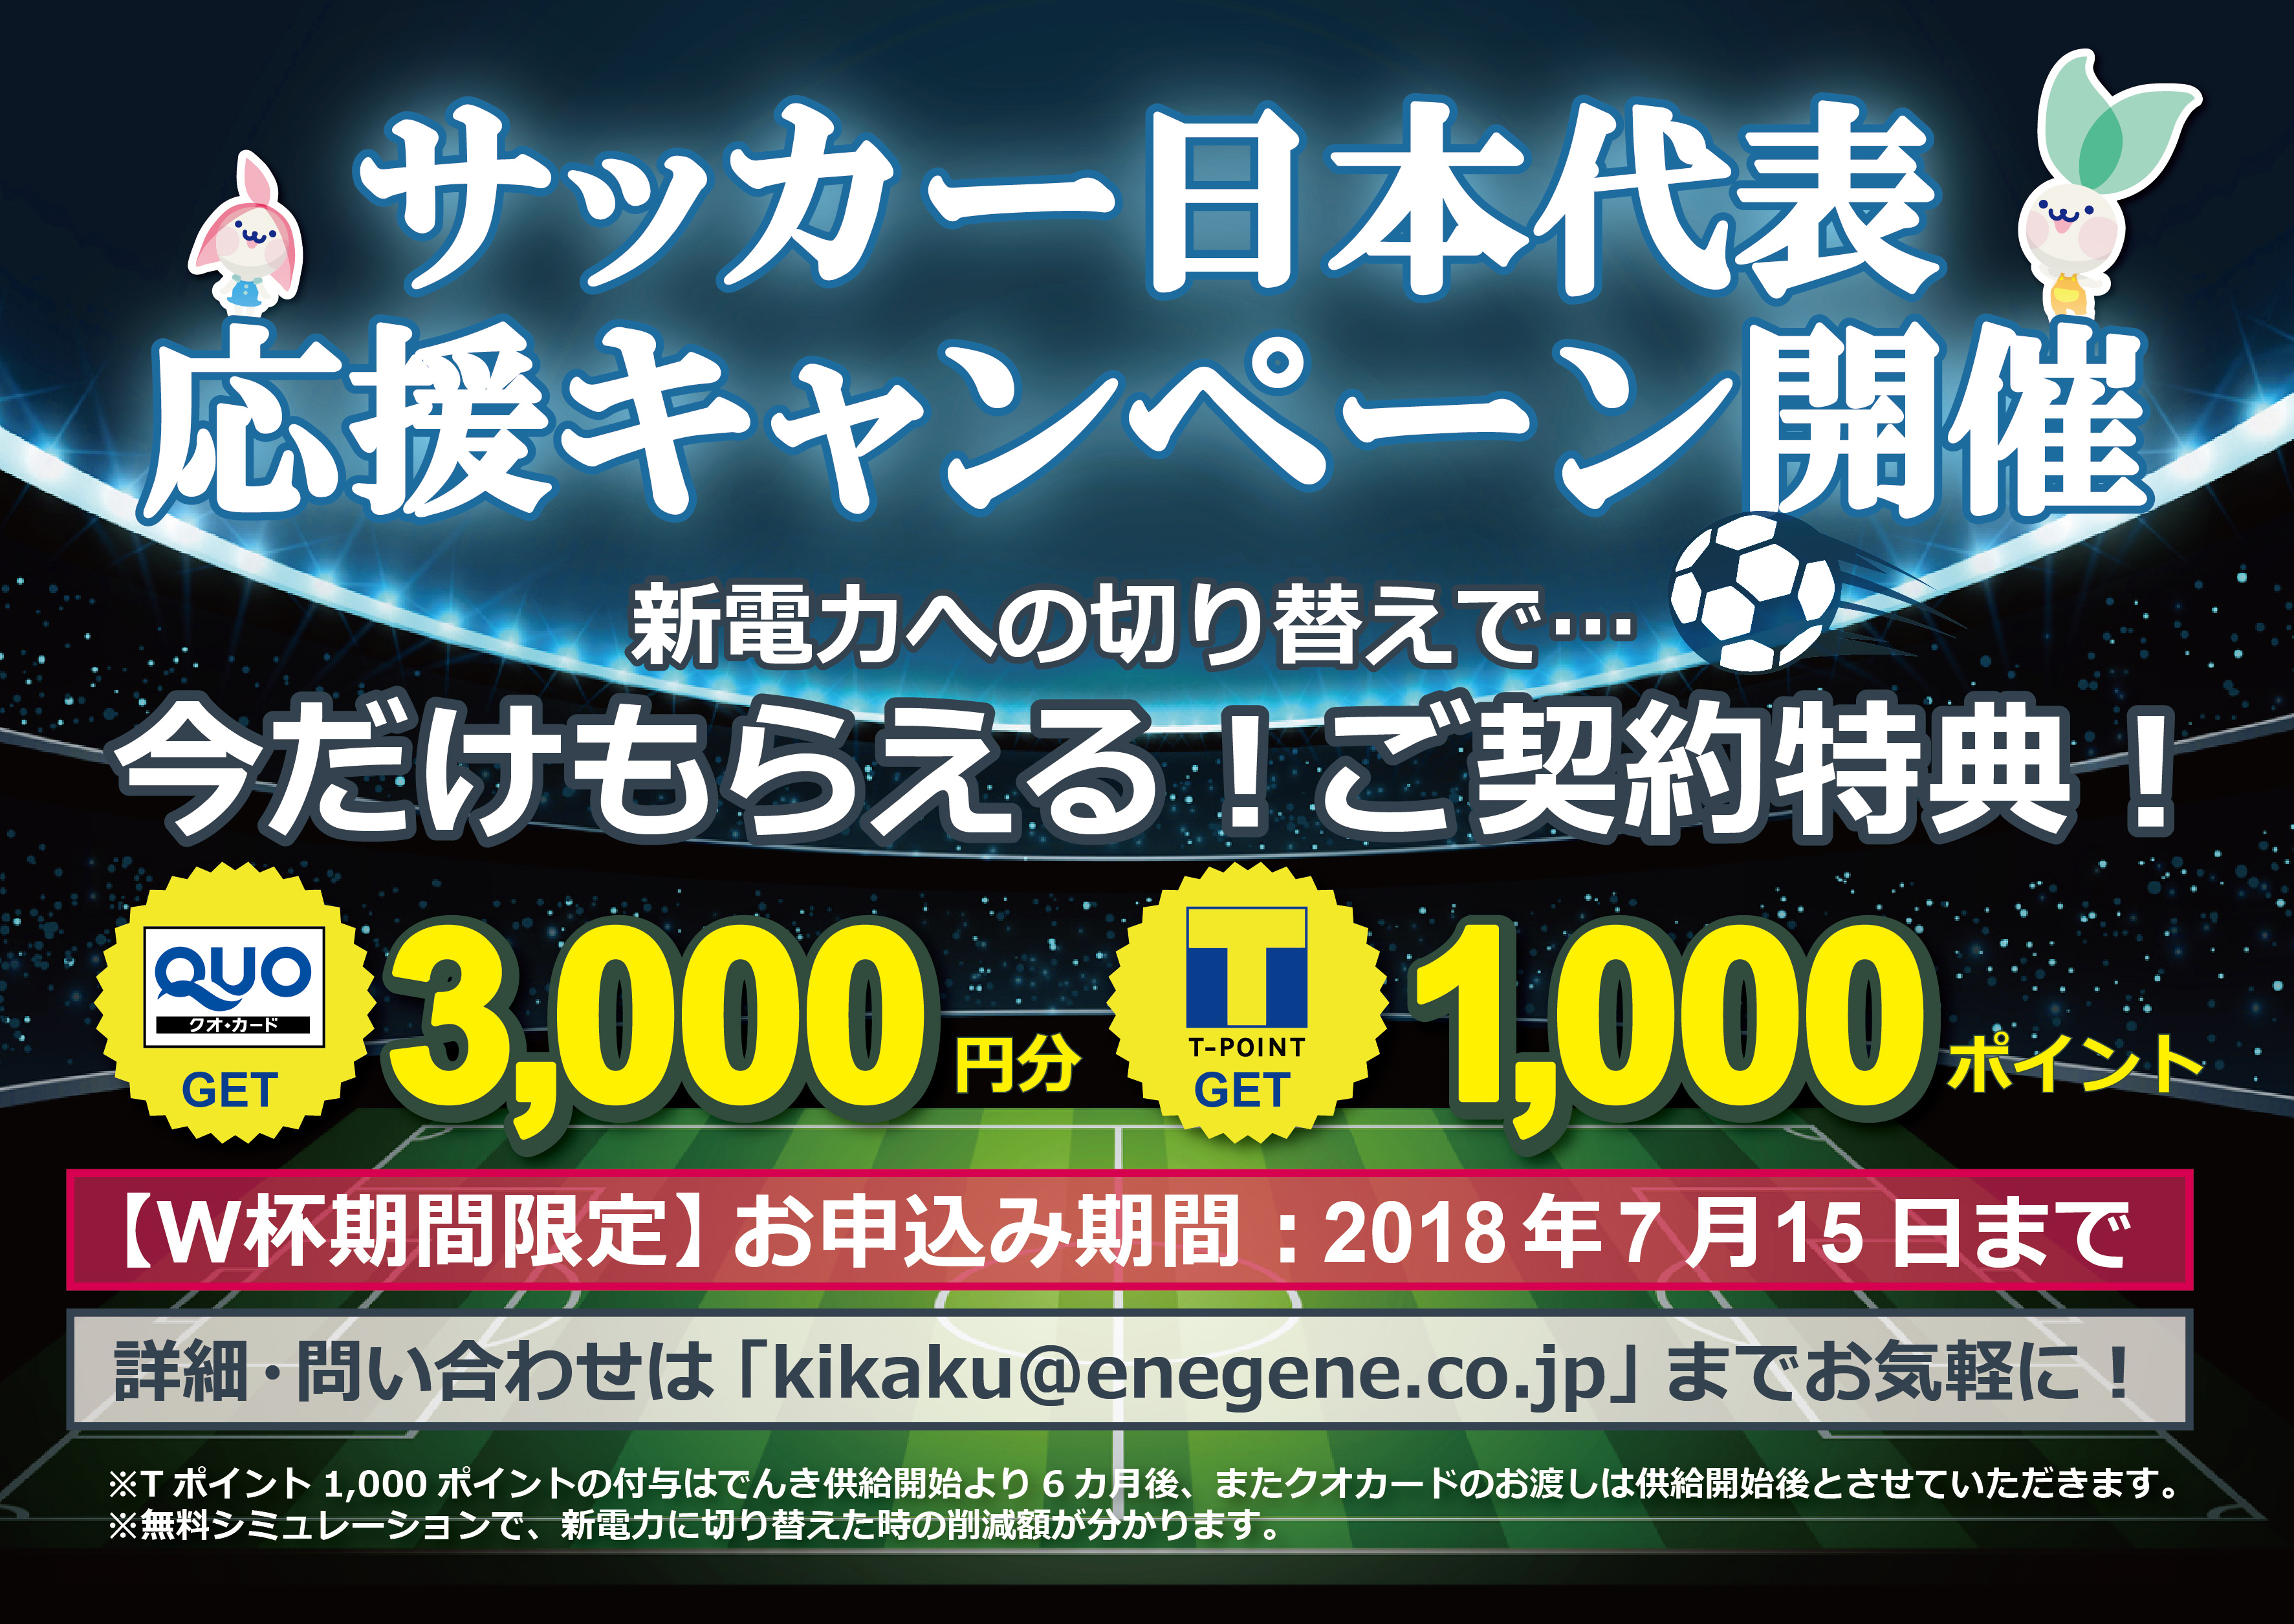 サッカー日本代表応援キャンペーン 勝ち進め西野ジャパン 浜松エリアの生活 エンタメ情報はエネフィブログ